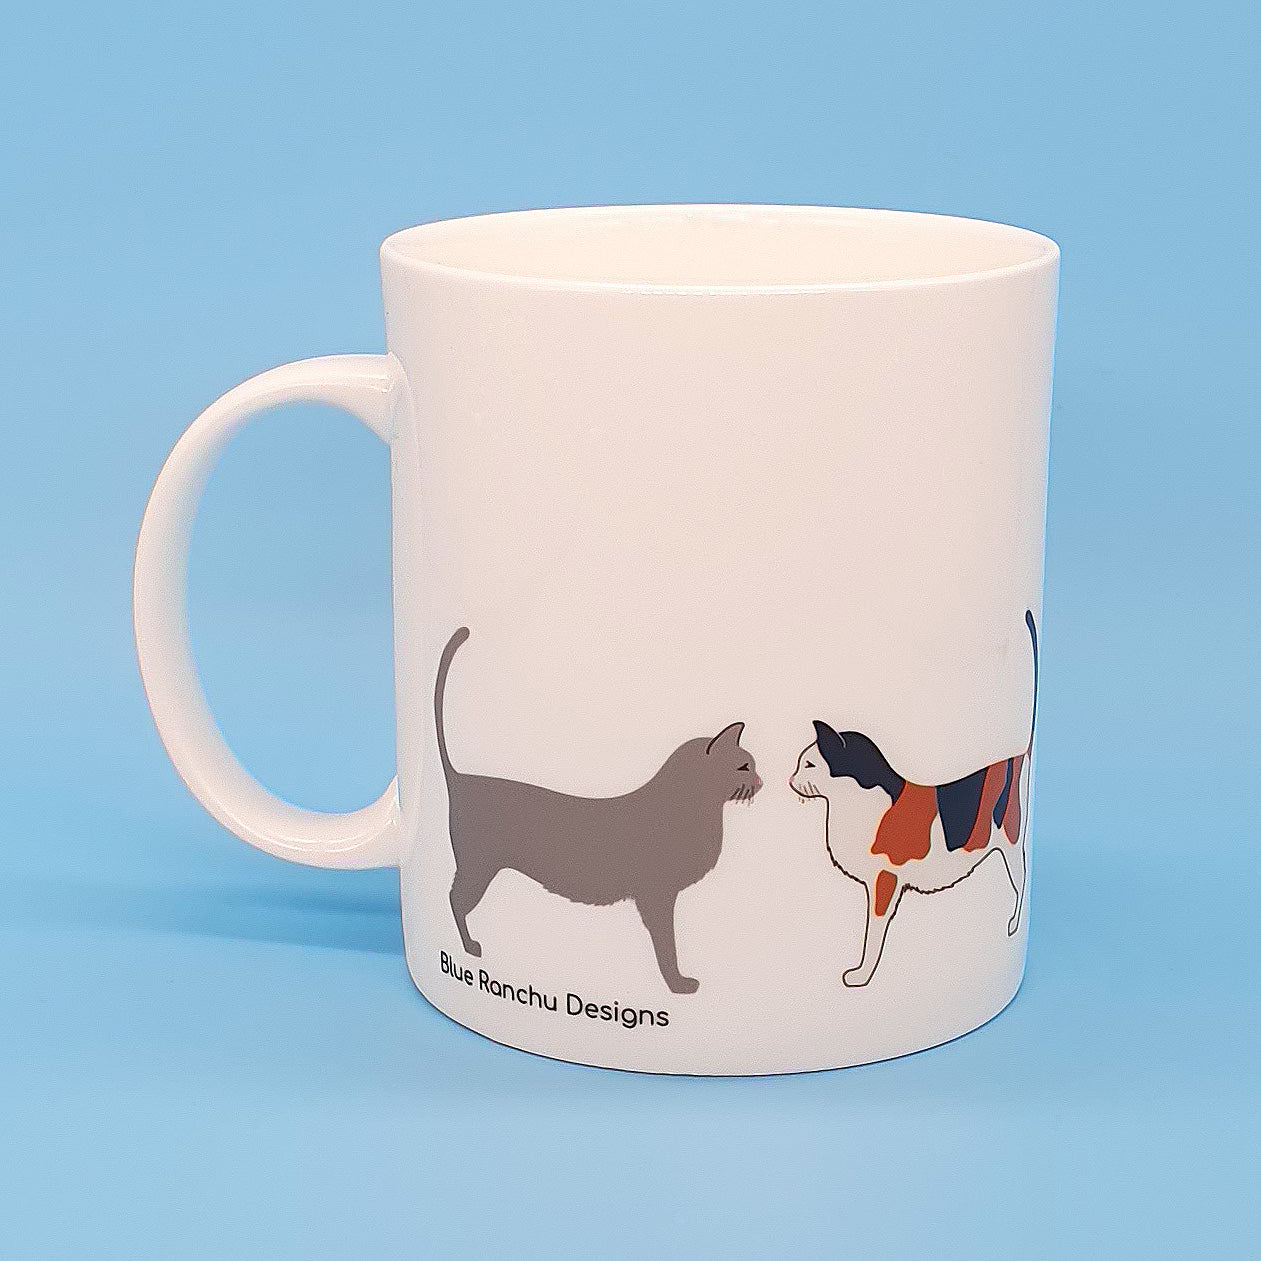 Large bone china mug with cats